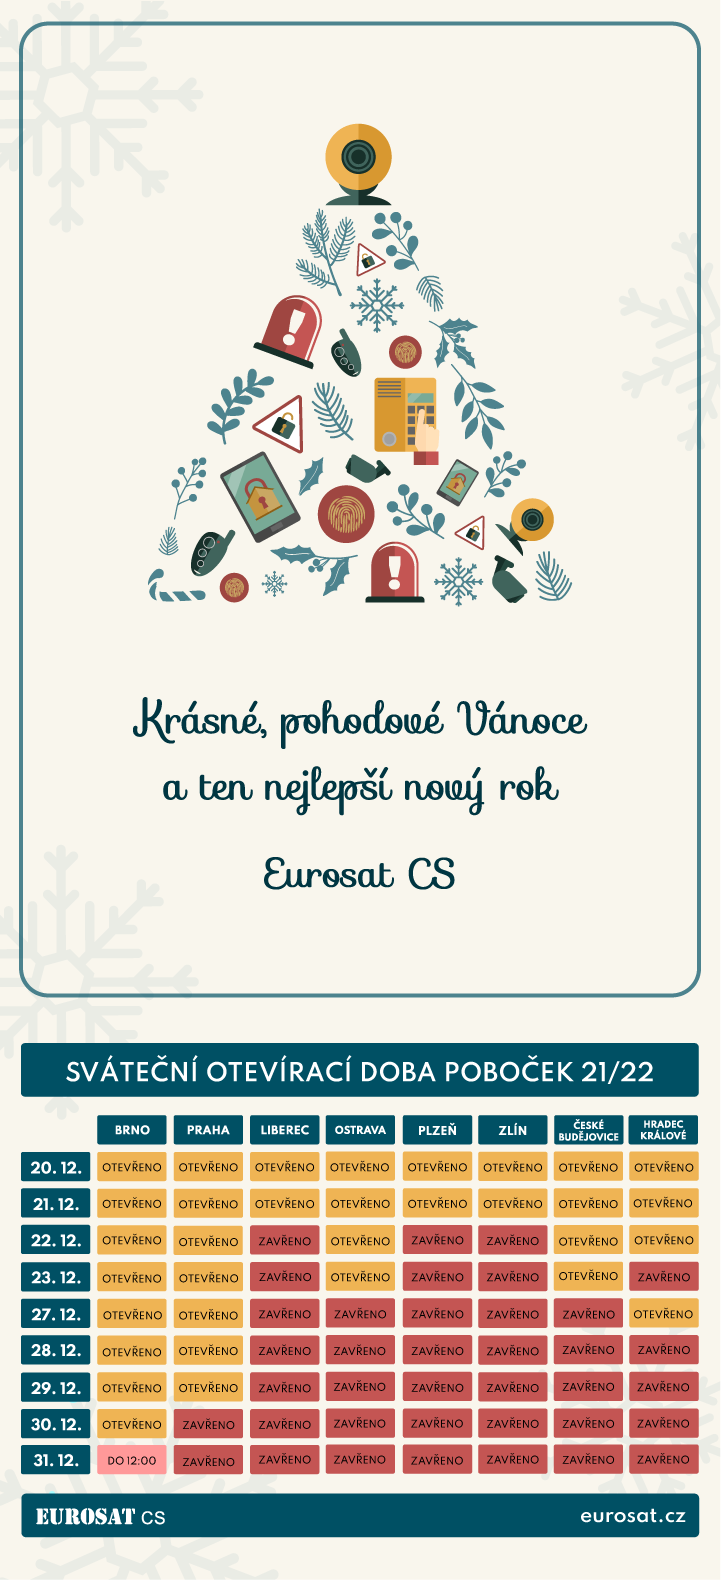 PF 2022 česká republika sváteční otevírací doba poboček Eurosat CS